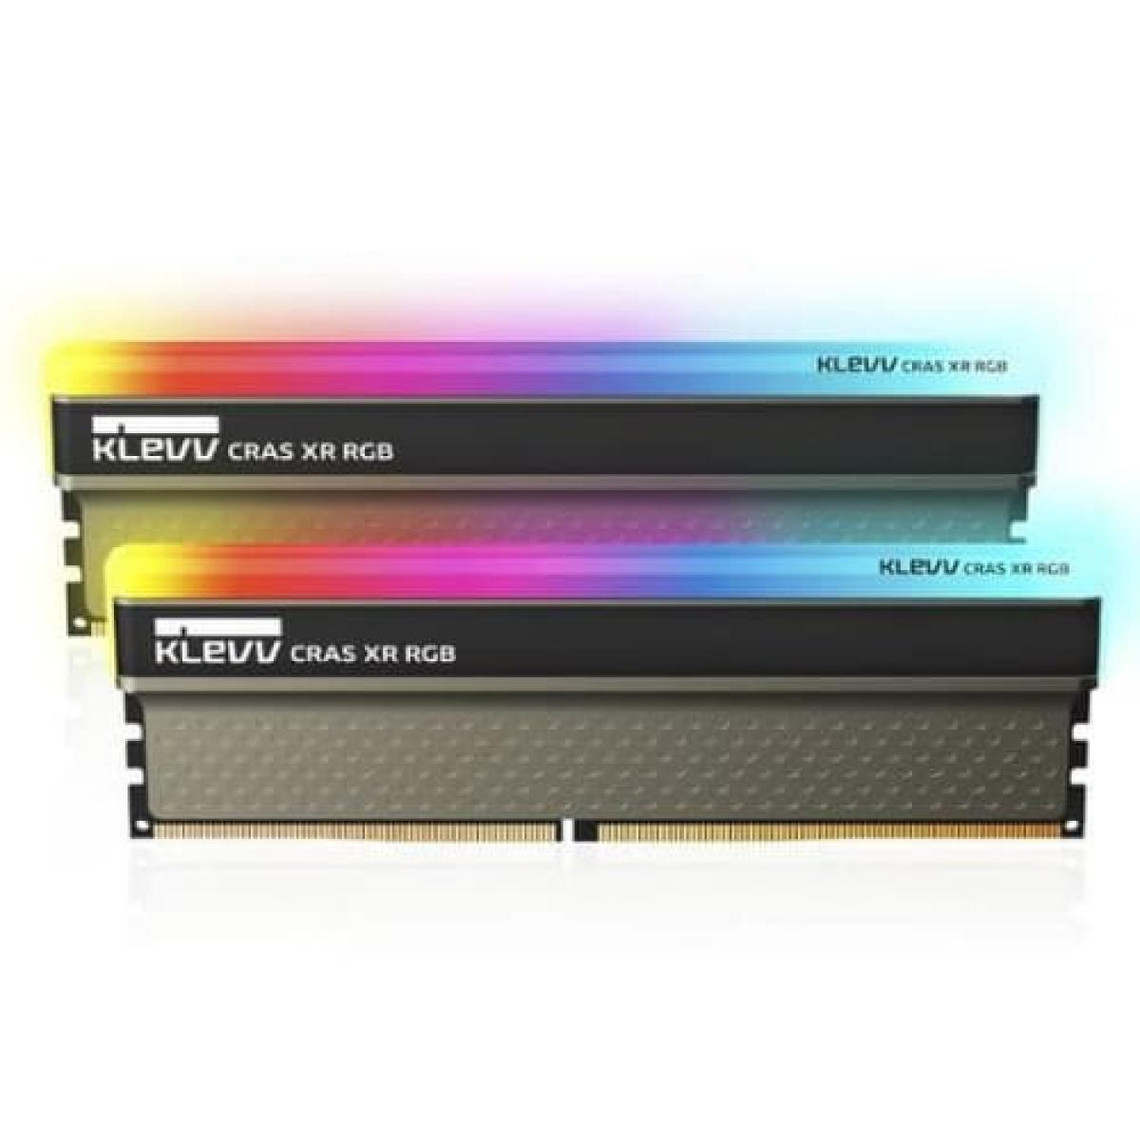 Klevv CRAS XR RGB Mémoire PC 16Go (2x8Go) DDR4 4000MHz CL19 Noir